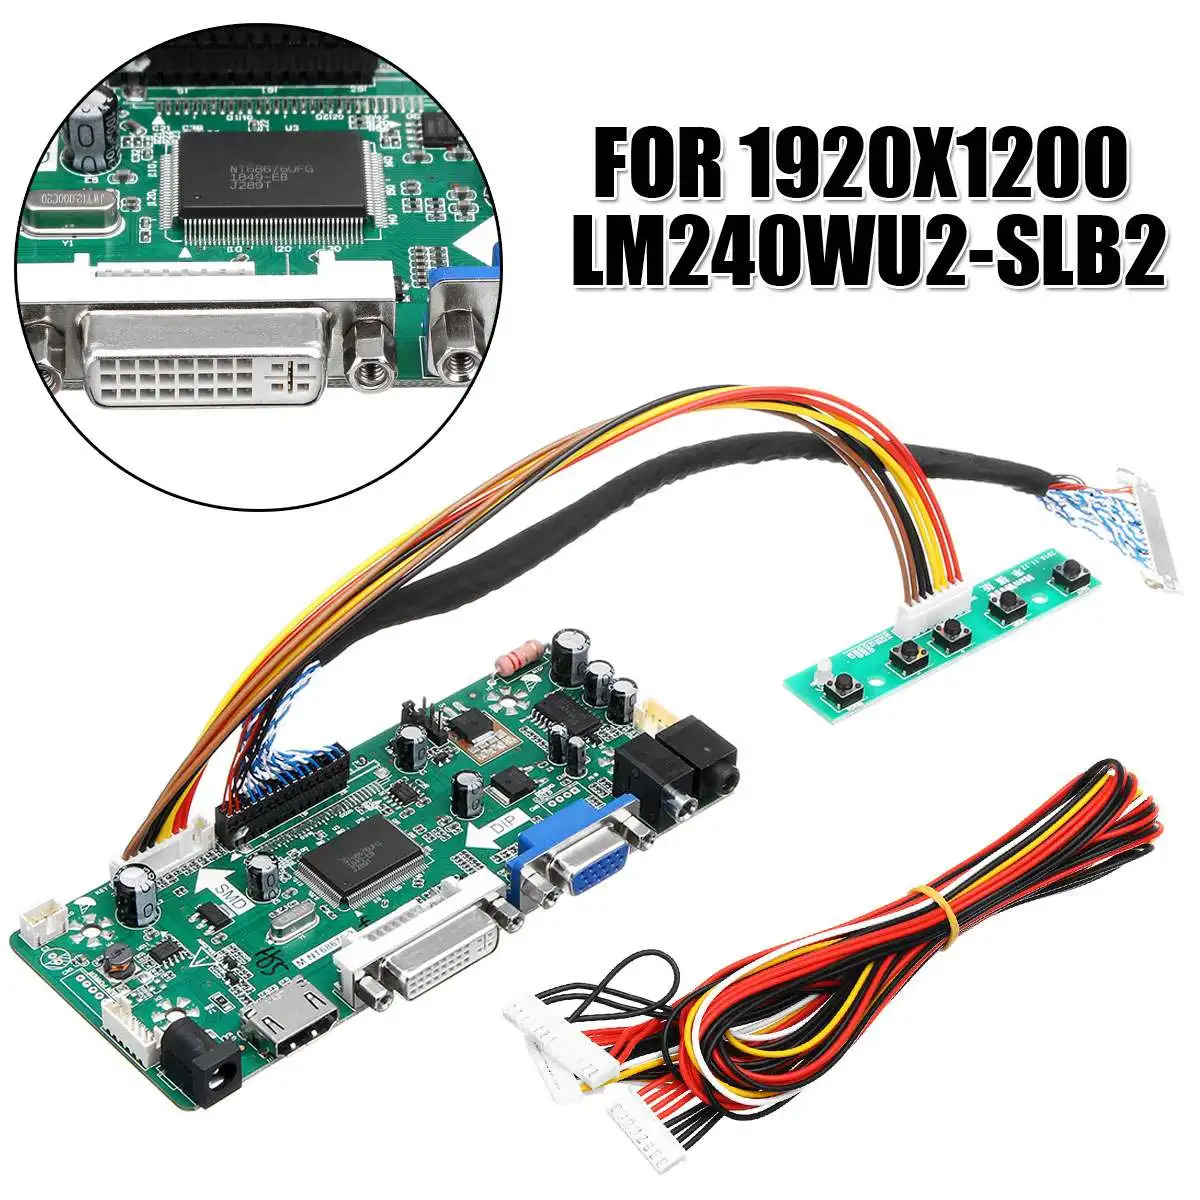 LEORY ЖК-дисплей плата контроллера HDMI, VGA, HDMI, DVI аудио PC драйвер для самостоятельной сборки доска набор для 24 дюймов Дисплей 1920x1200 LM240WU2-SLB2